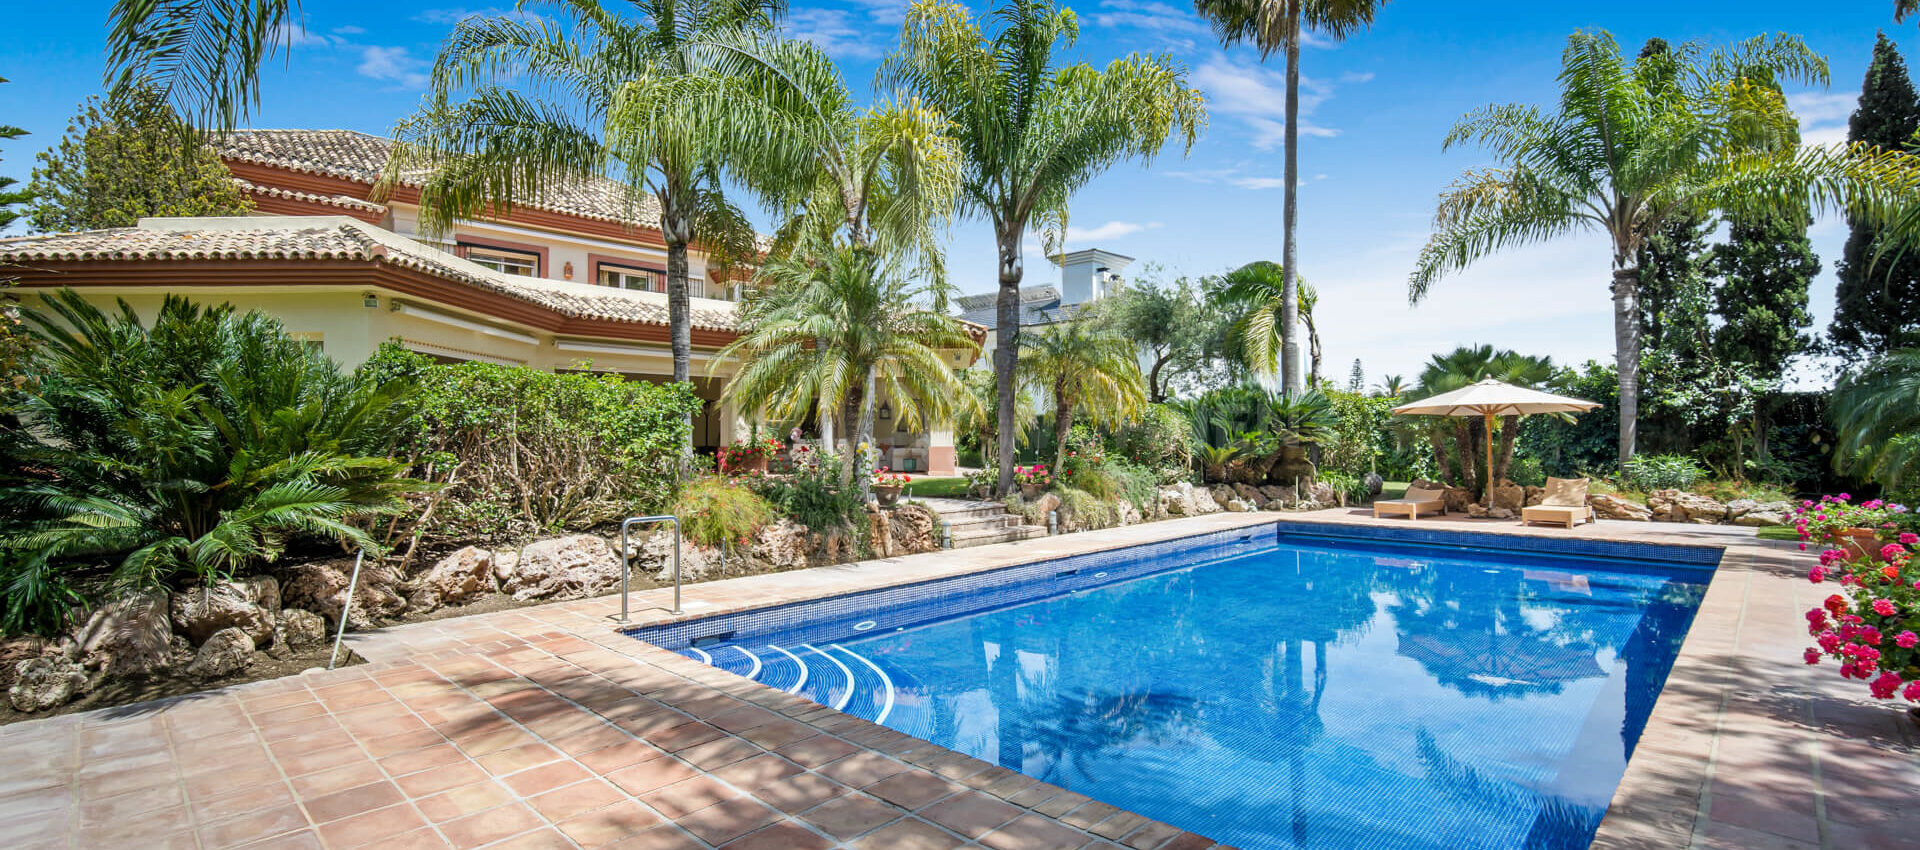 Villa de calidad de estilo clásico en Guadalmina Baja